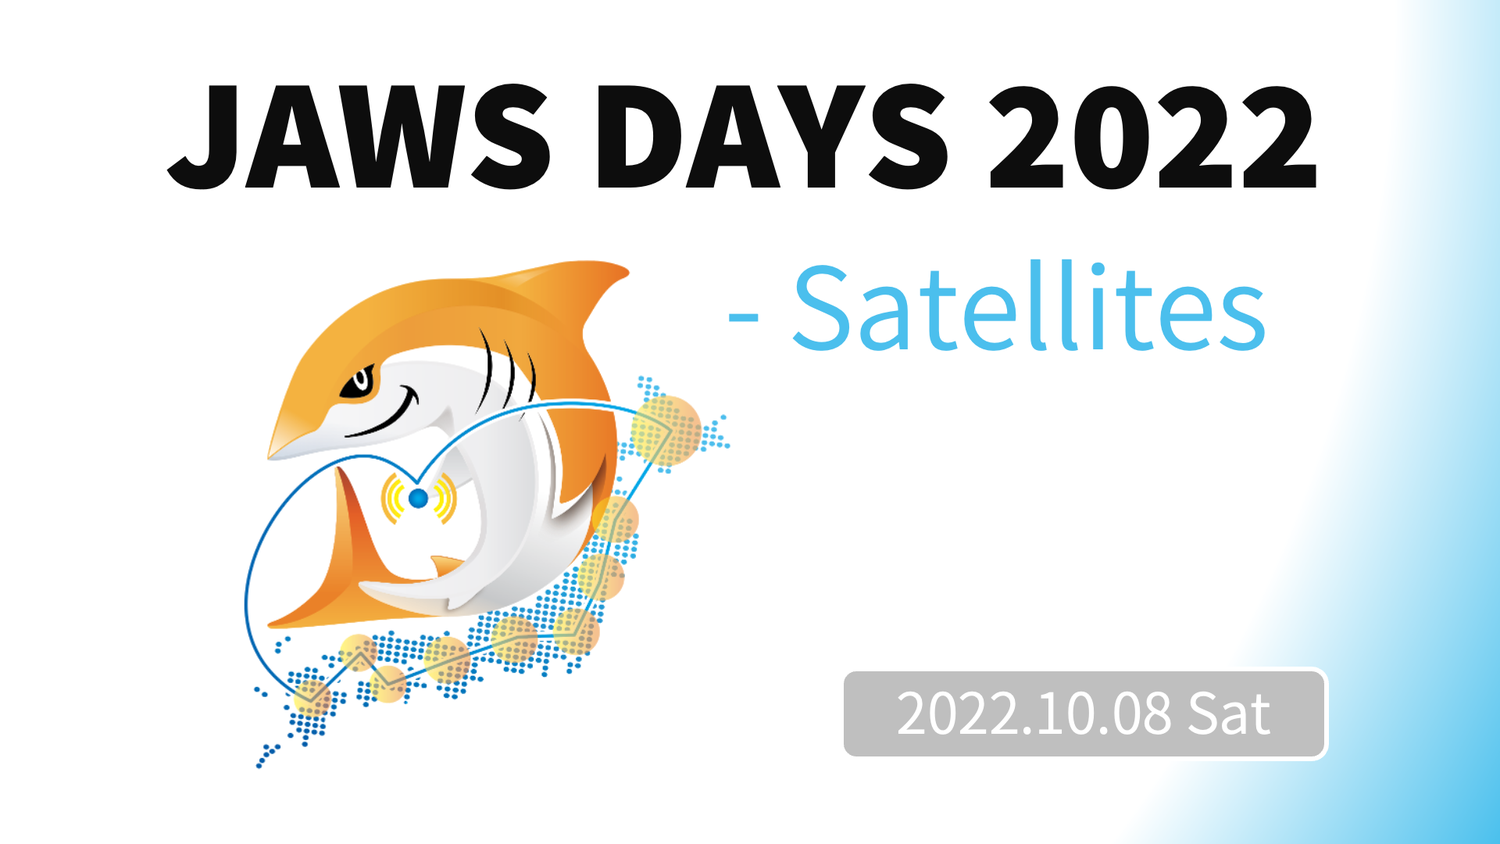 AWSユーザによるAWSユーザのためのイベント「JAWS DAYS 2022 - Satellite -」に起業サポーターとして協賛いたします